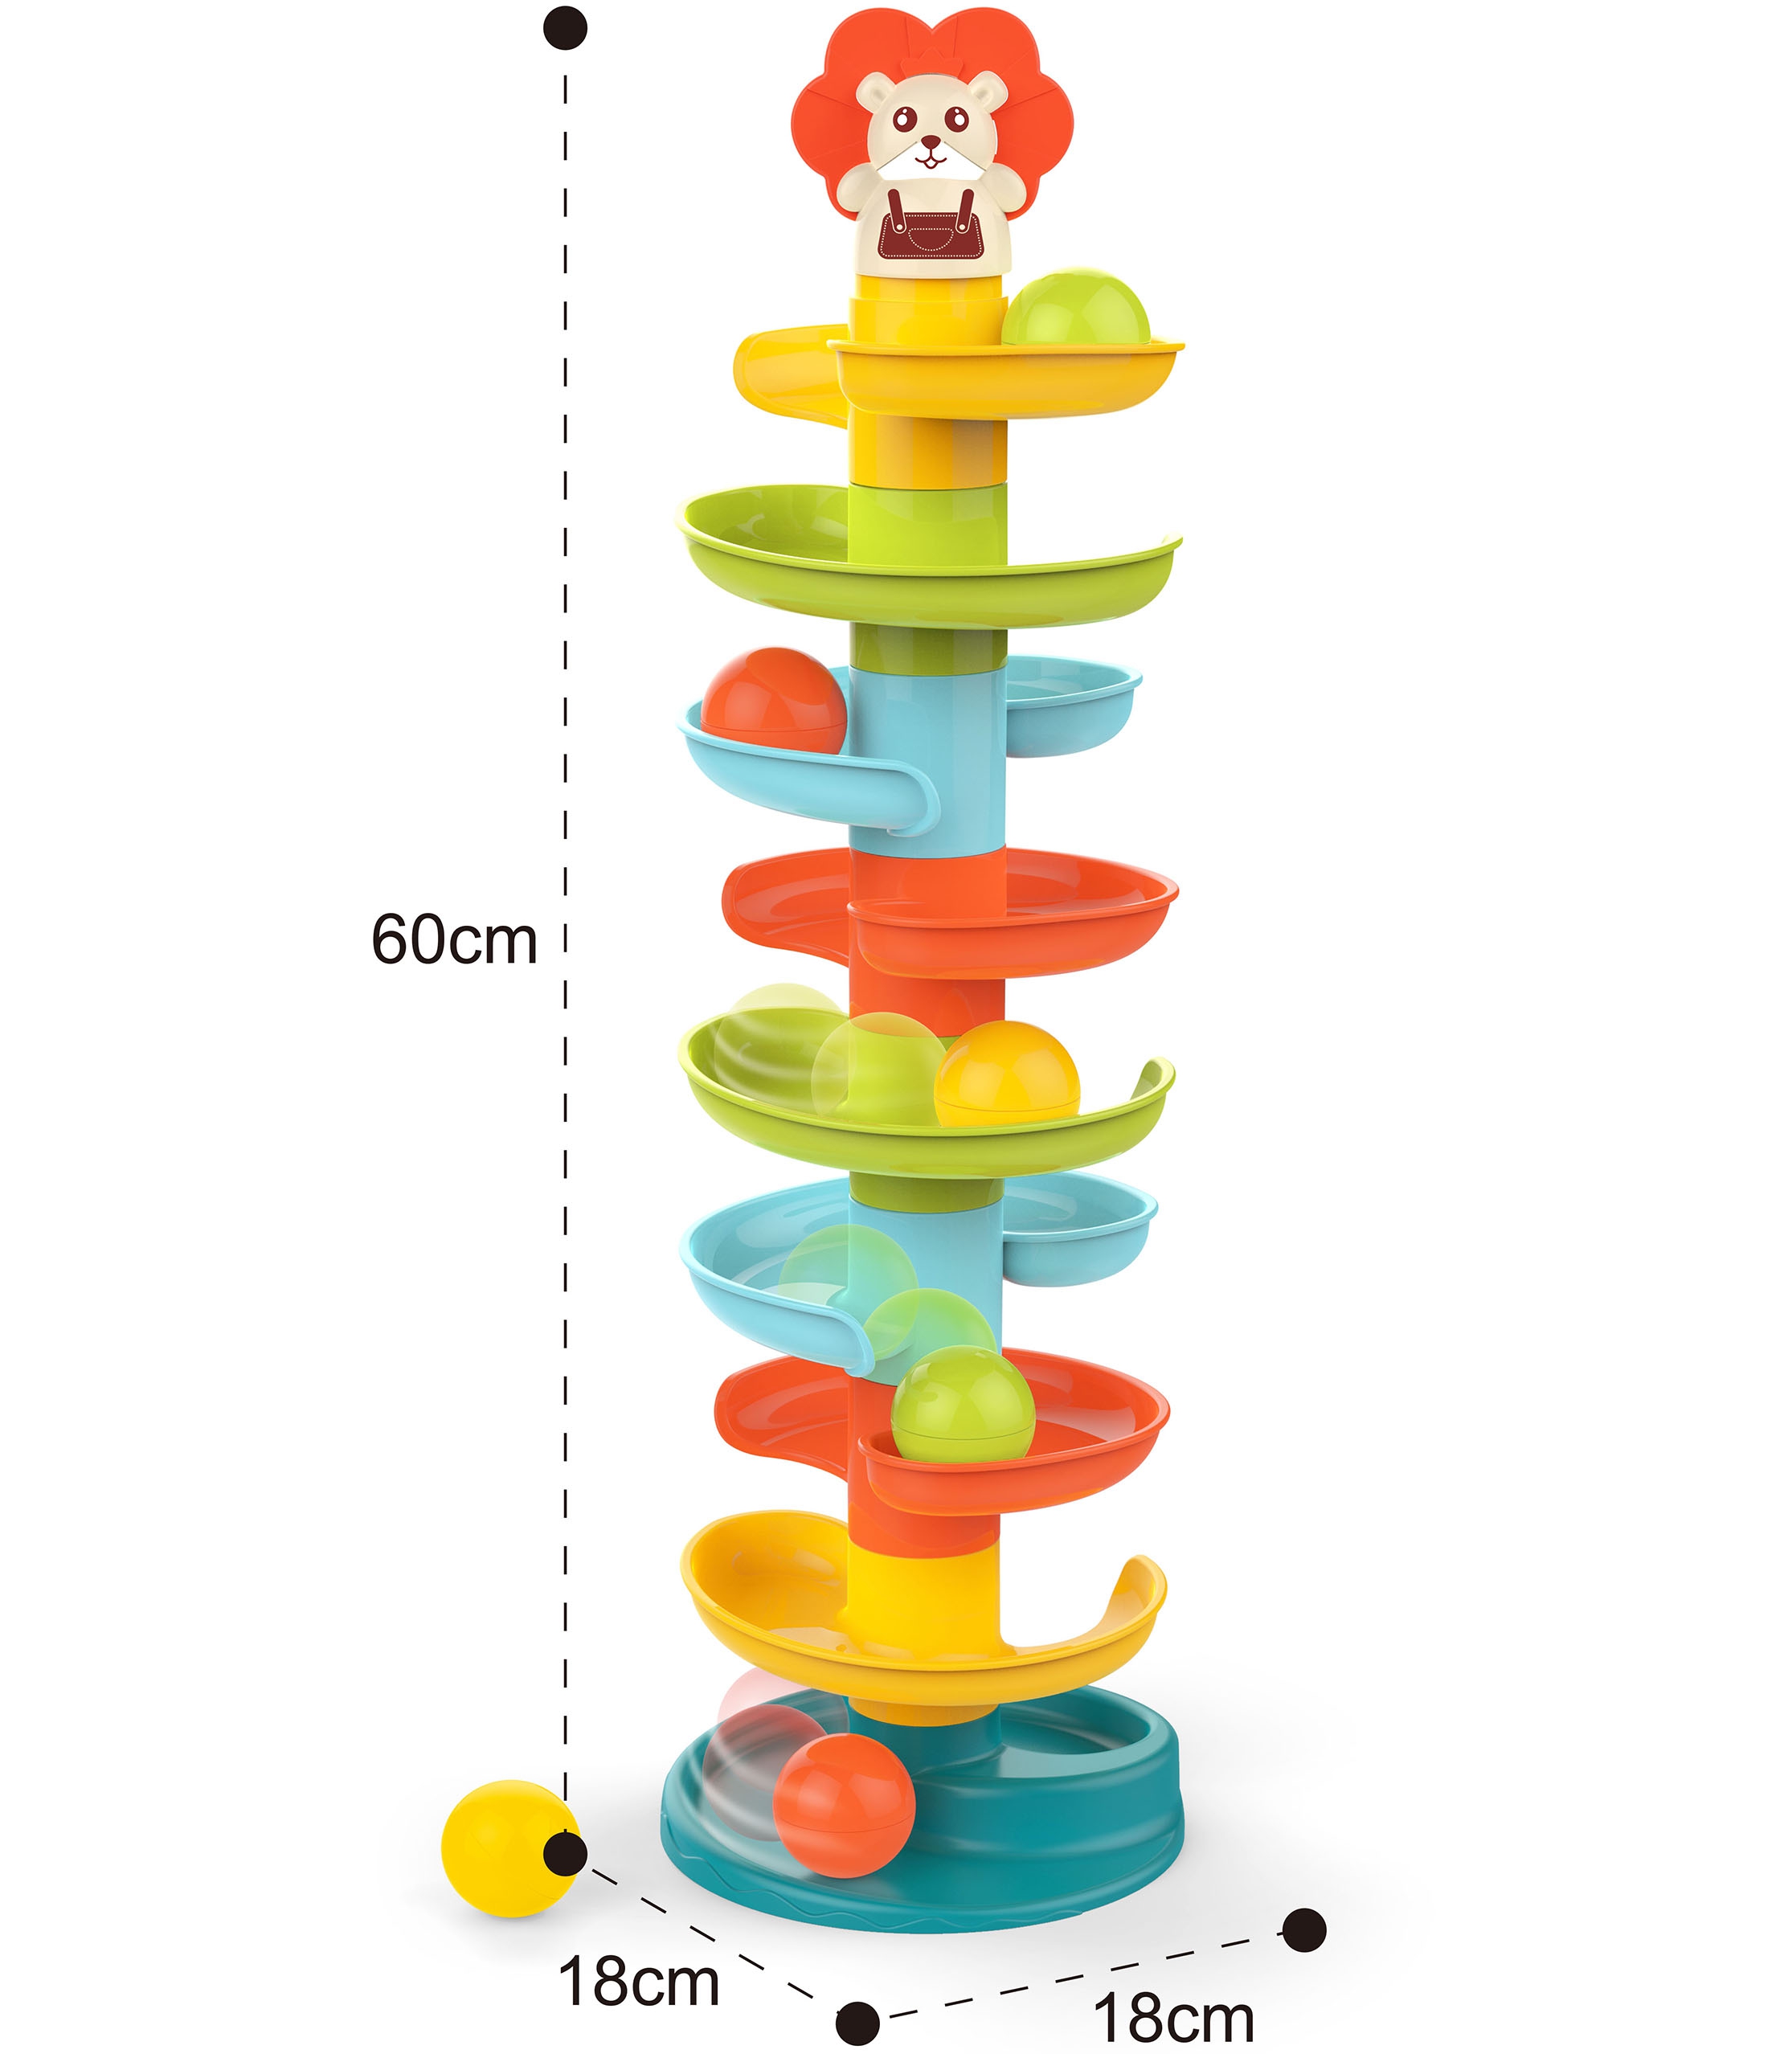 Baby kulodrom tor kulkowy zestaw spirala + 6 kulek, zabawka dla dzieci, Woopie